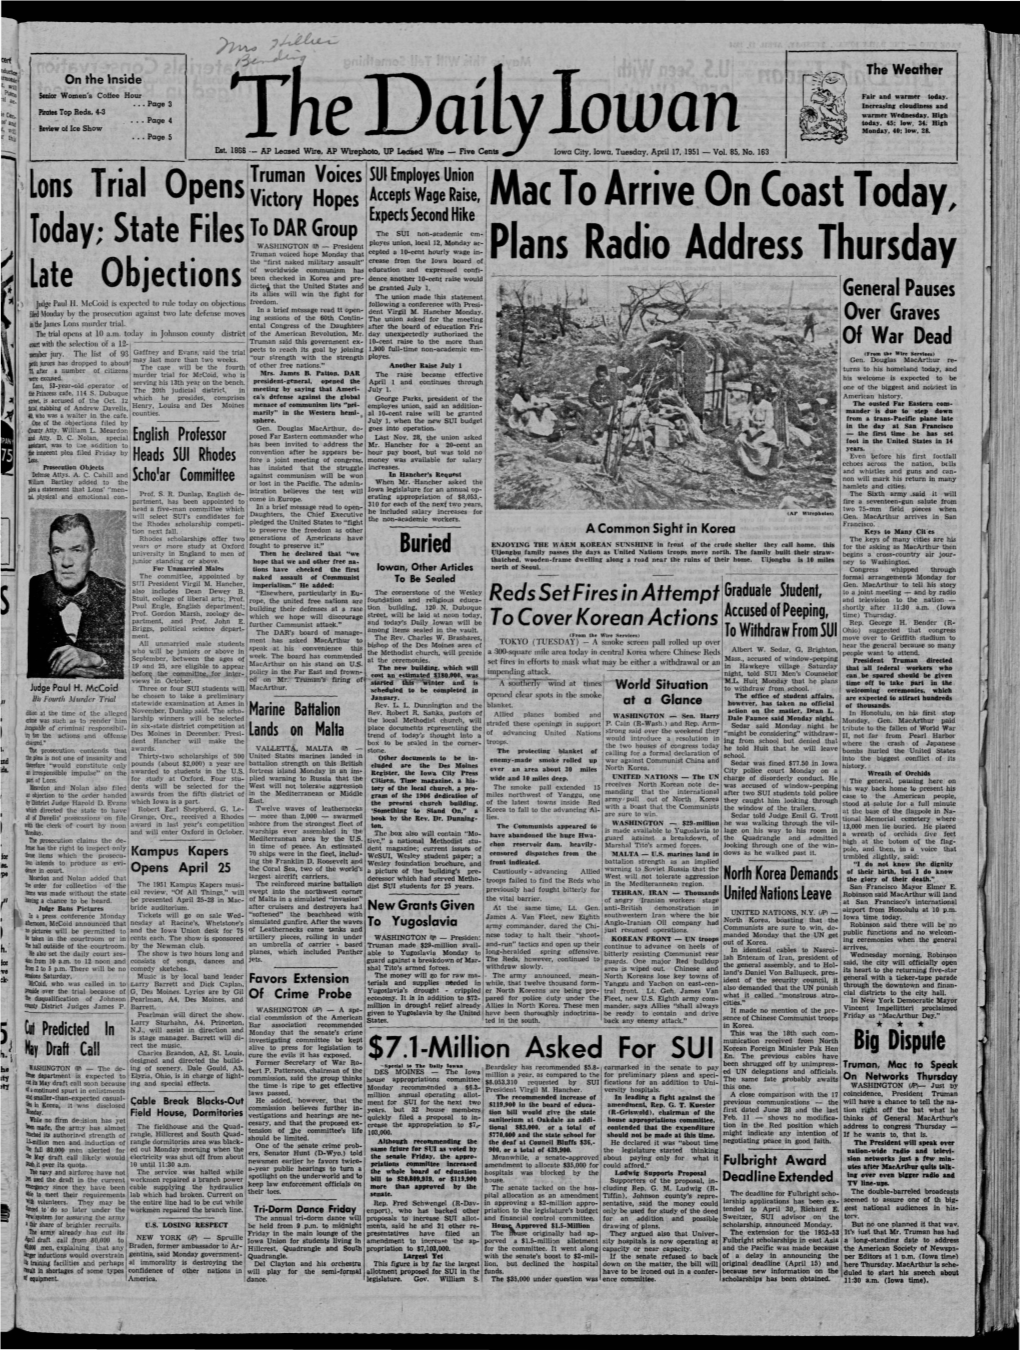 Daily Iowan (Iowa City, Iowa), 1951-04-17